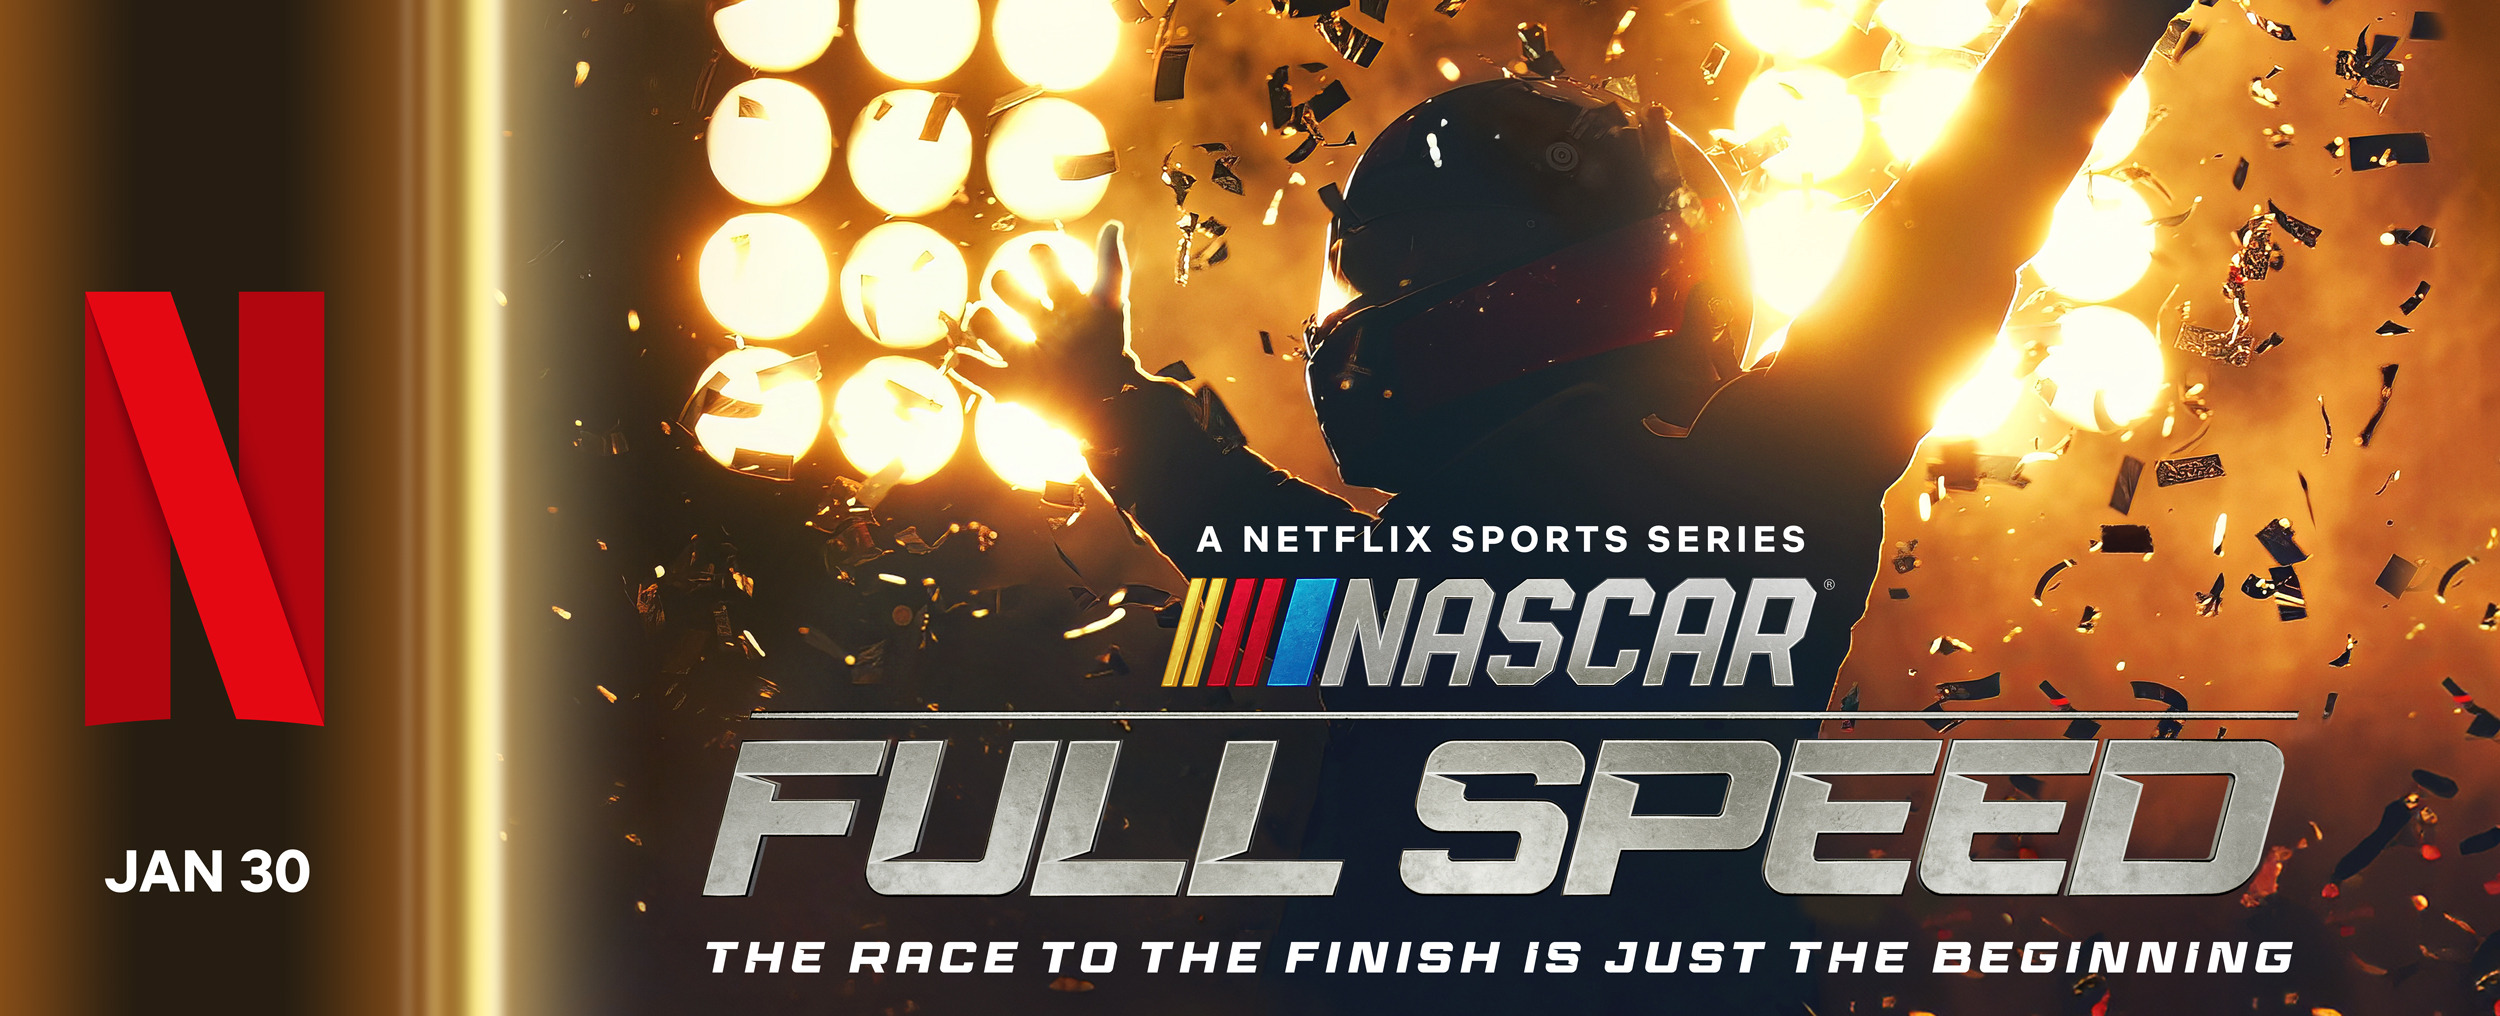 Mega Sized TV Poster Image for NASCAR: Full Speed (#2 of 11)